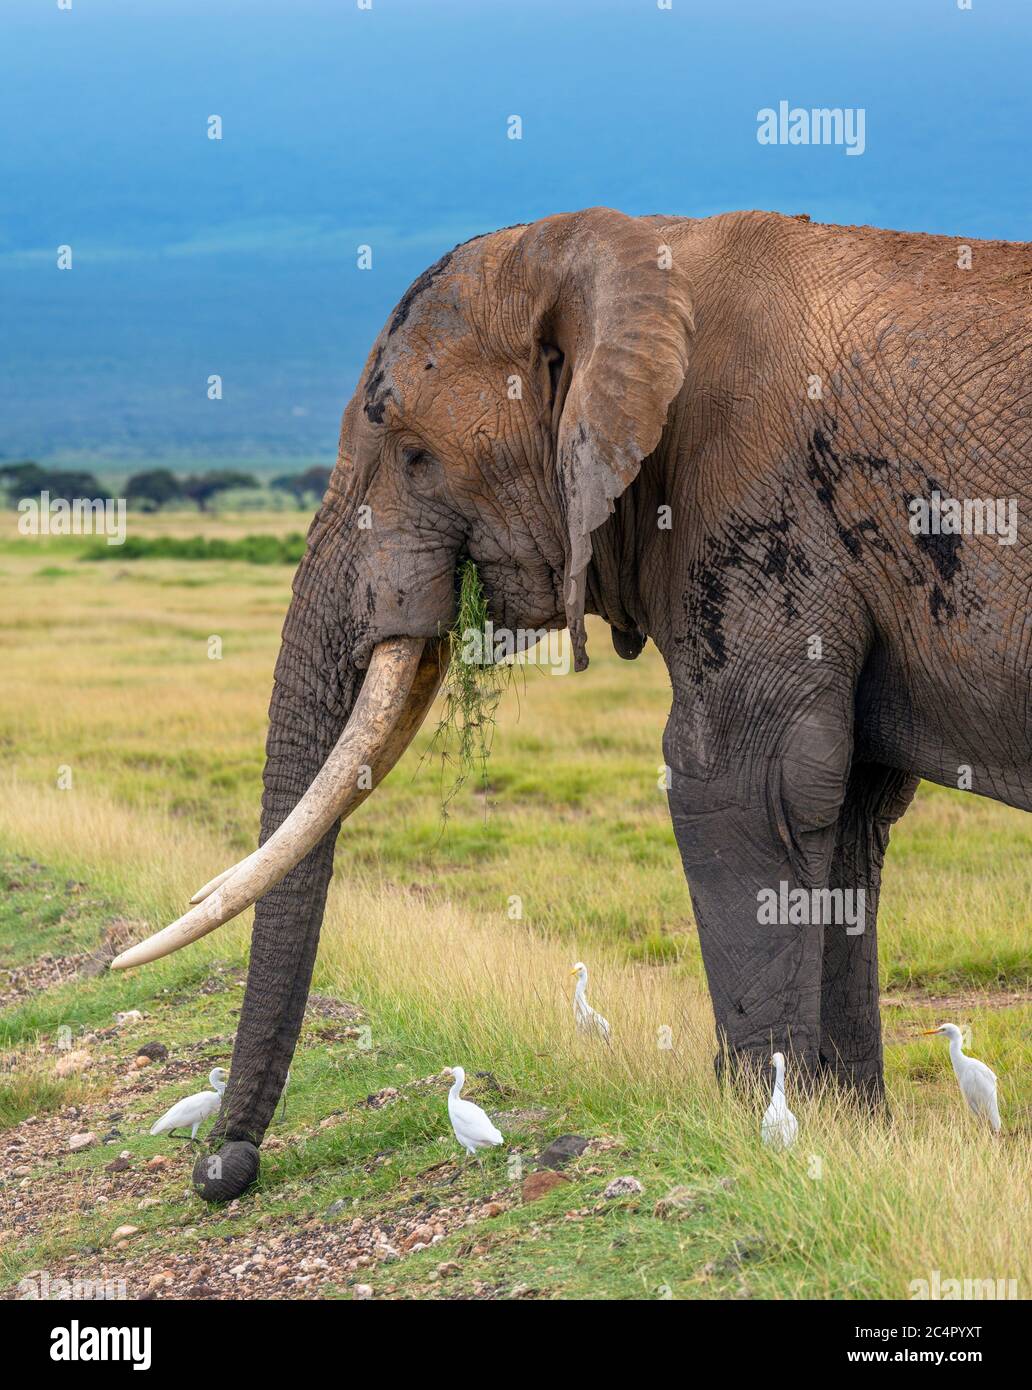 Afrikanischer Buschelefant (Loxodonta africana) grast, während er von Reihern umgeben ist, Amboseli National Park, Kenia, Afrika Stockfoto